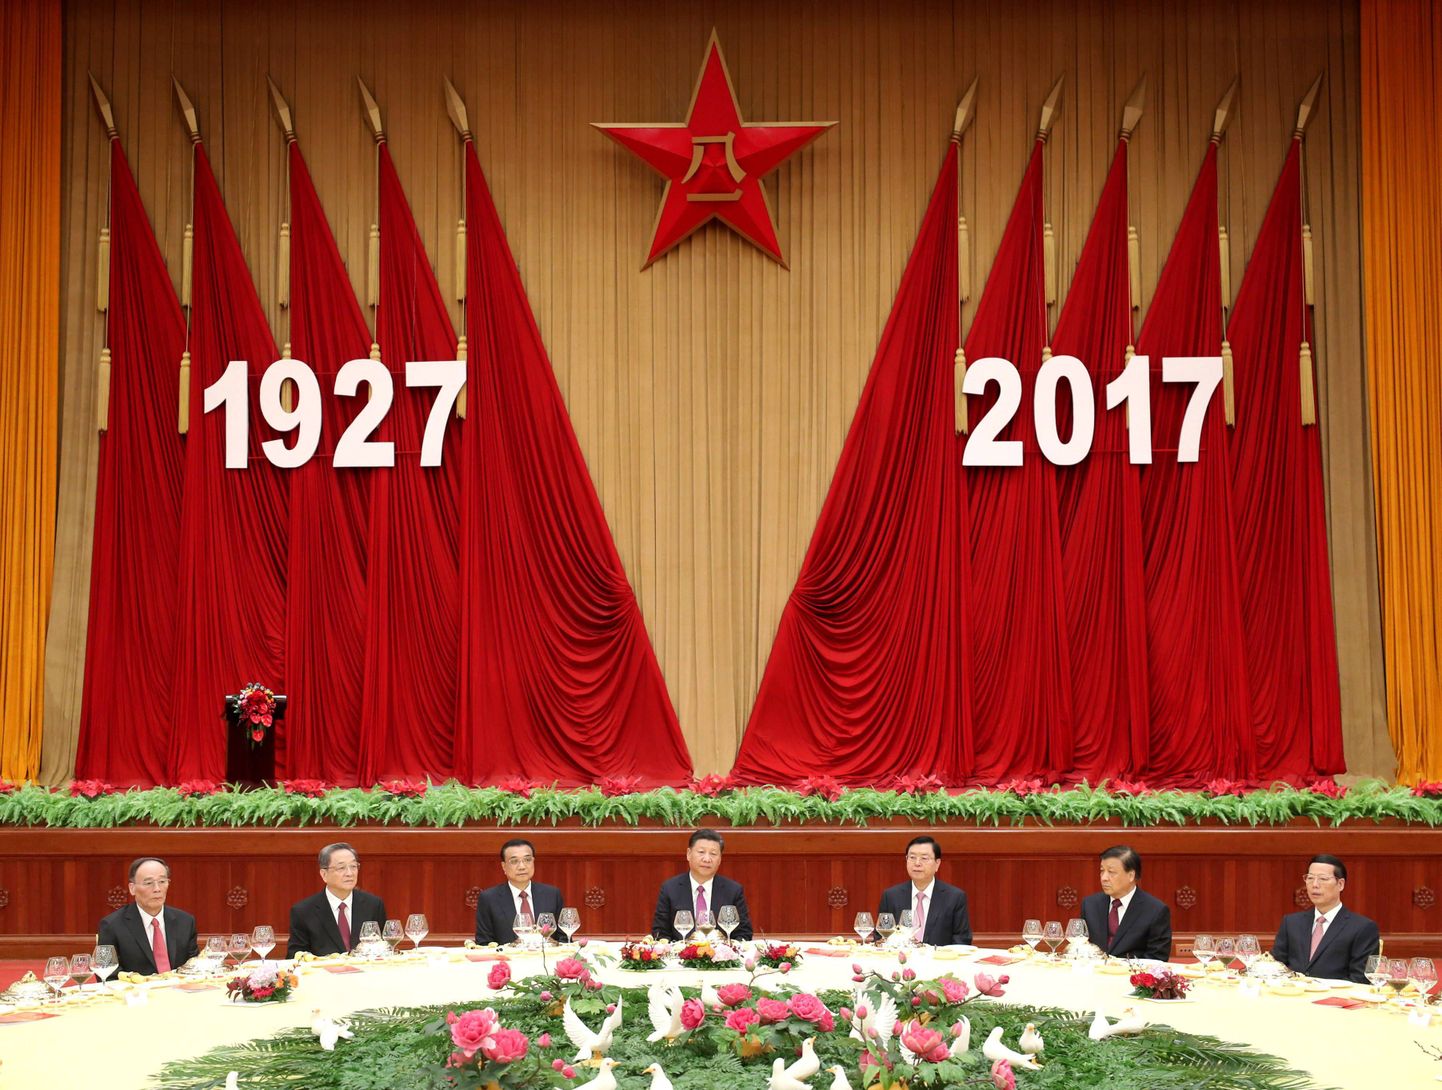 Hiina kommunistliku partei esindajad.